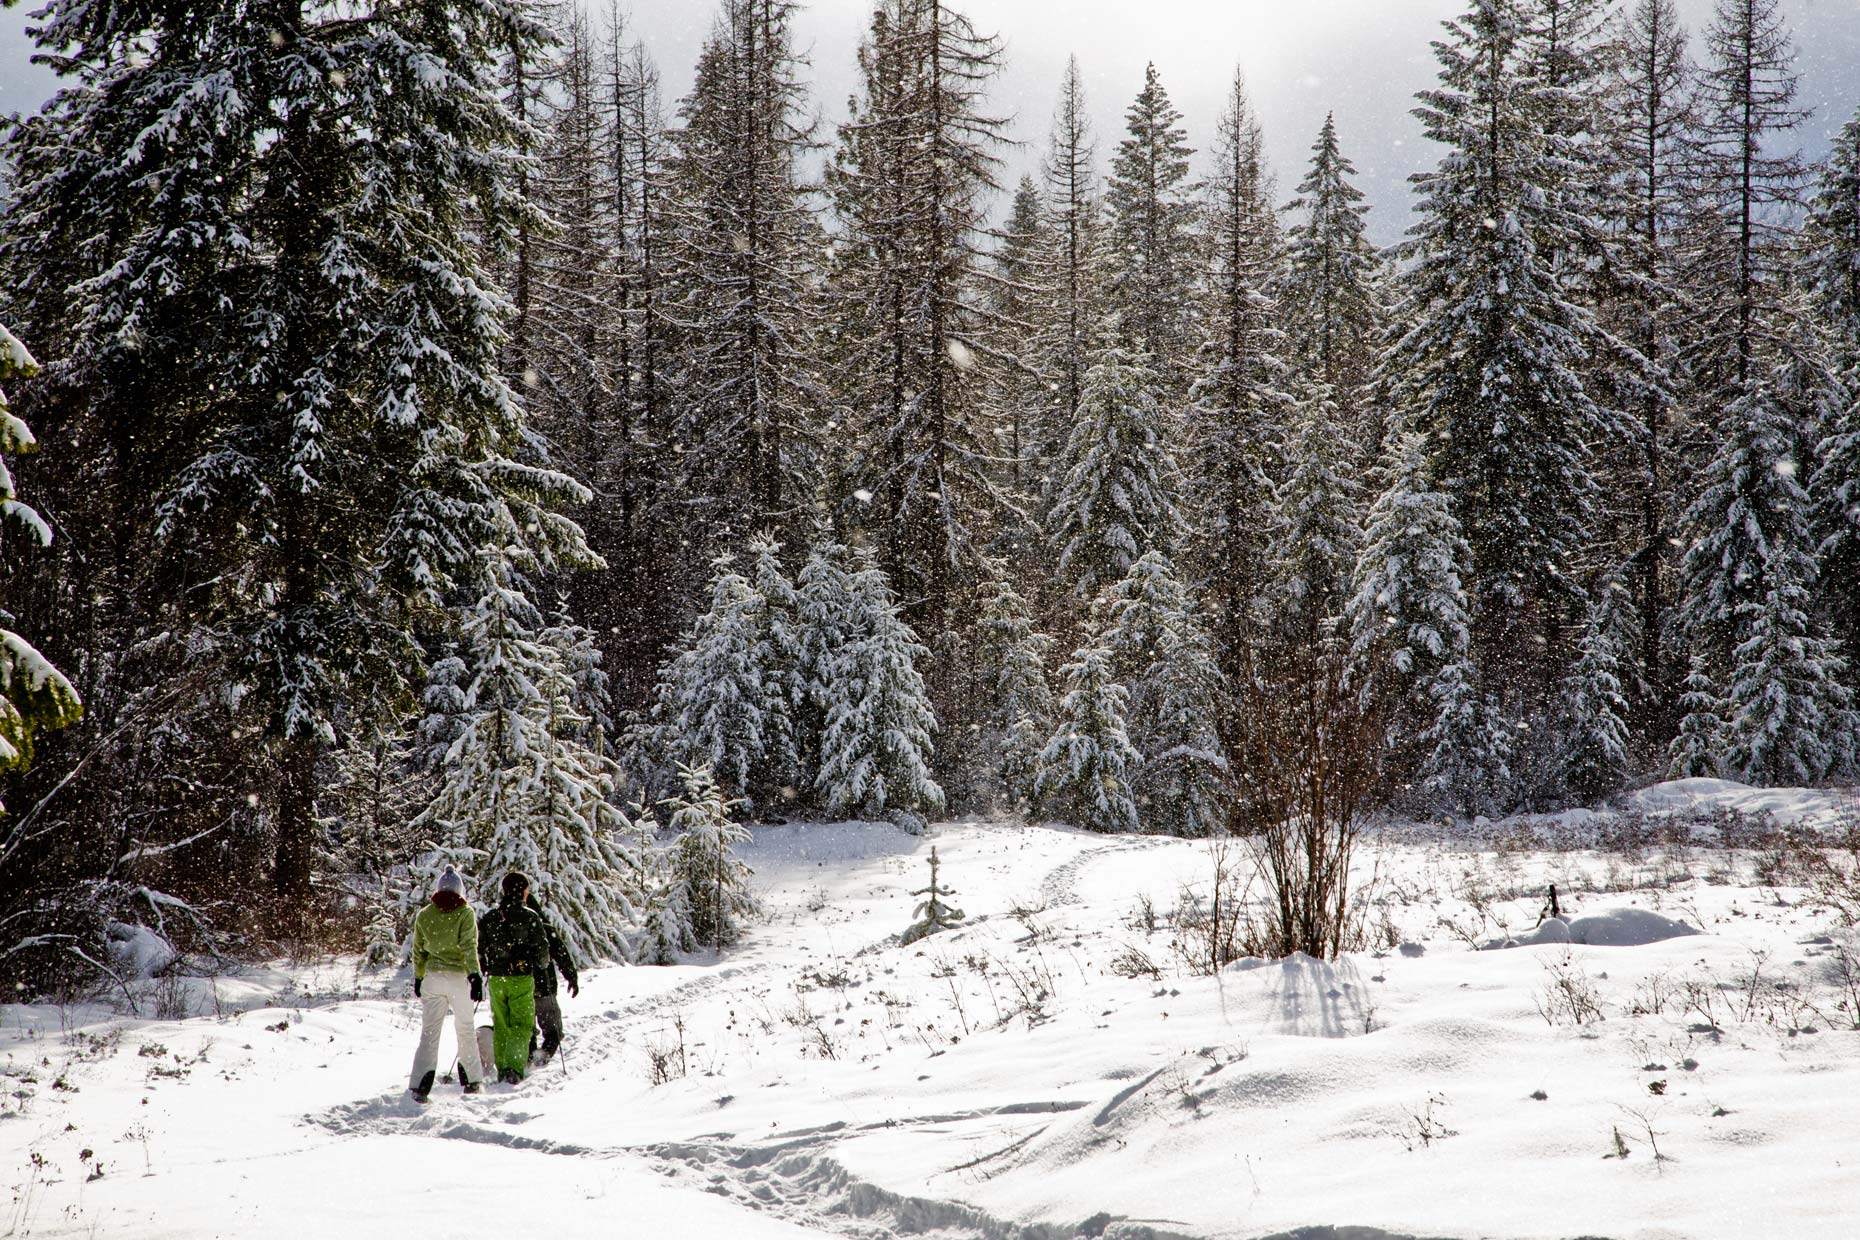 Snowshoeing in a winter wonderland